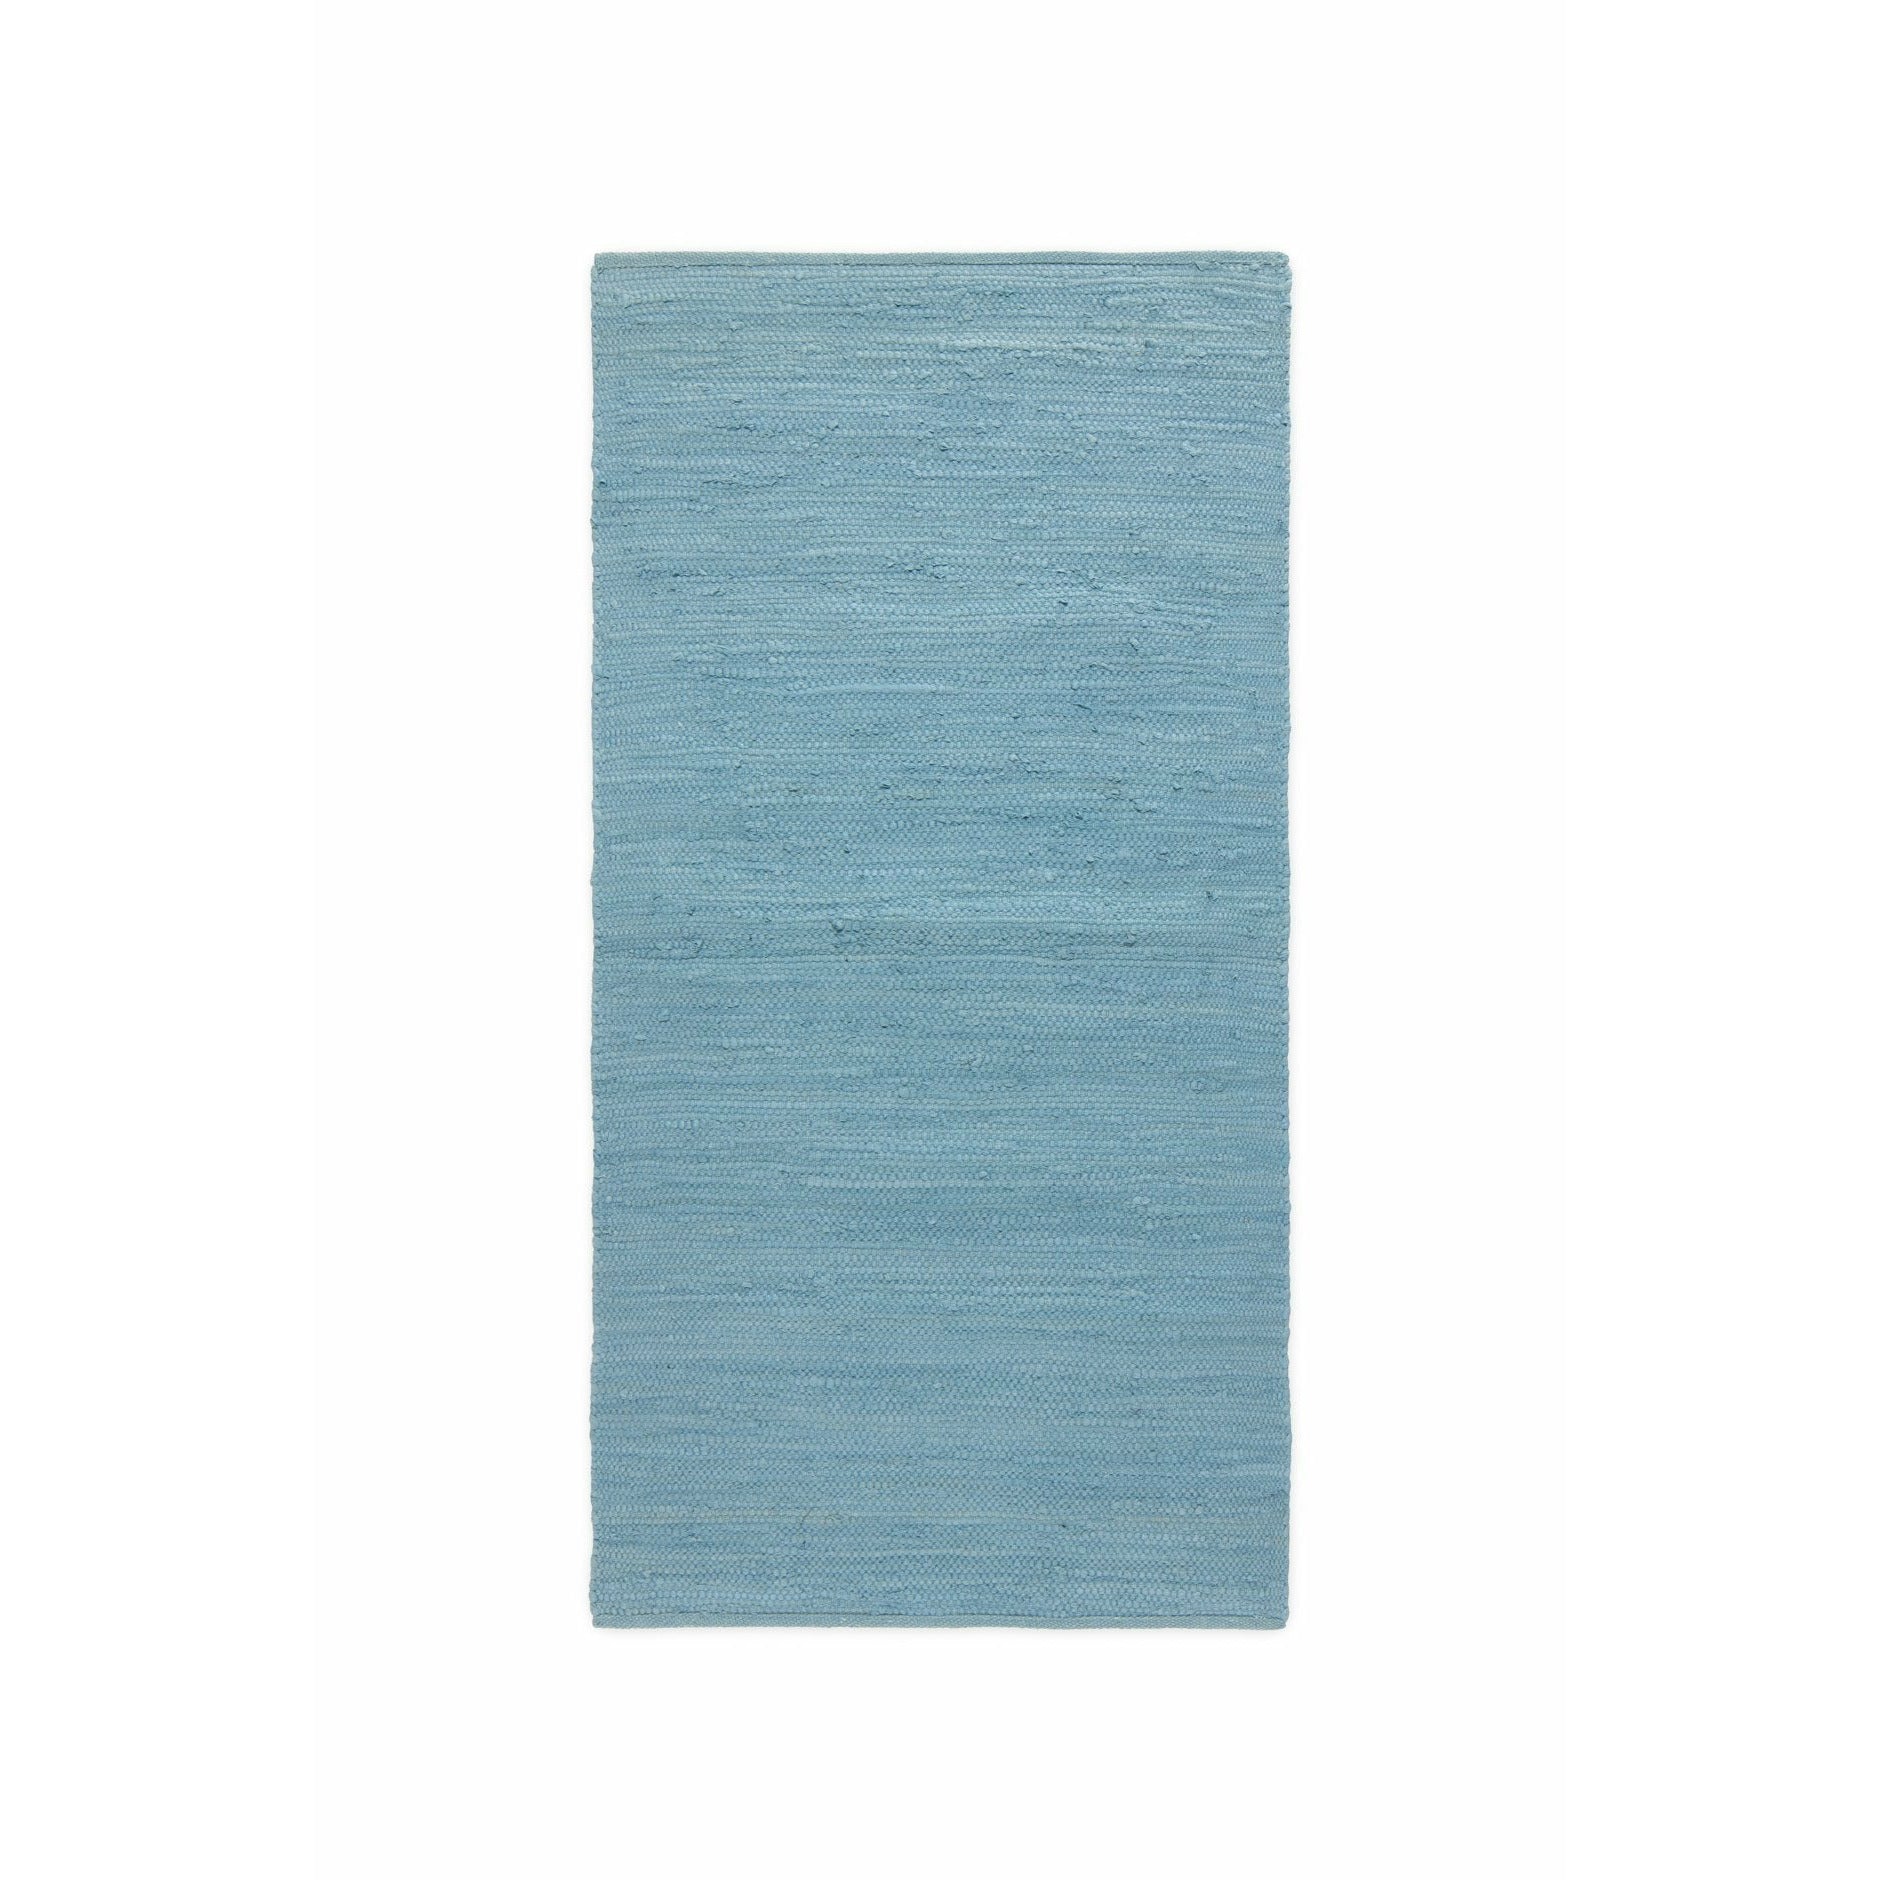 Rug solid bomulls teppe evighet blå, 65 x 135 cm